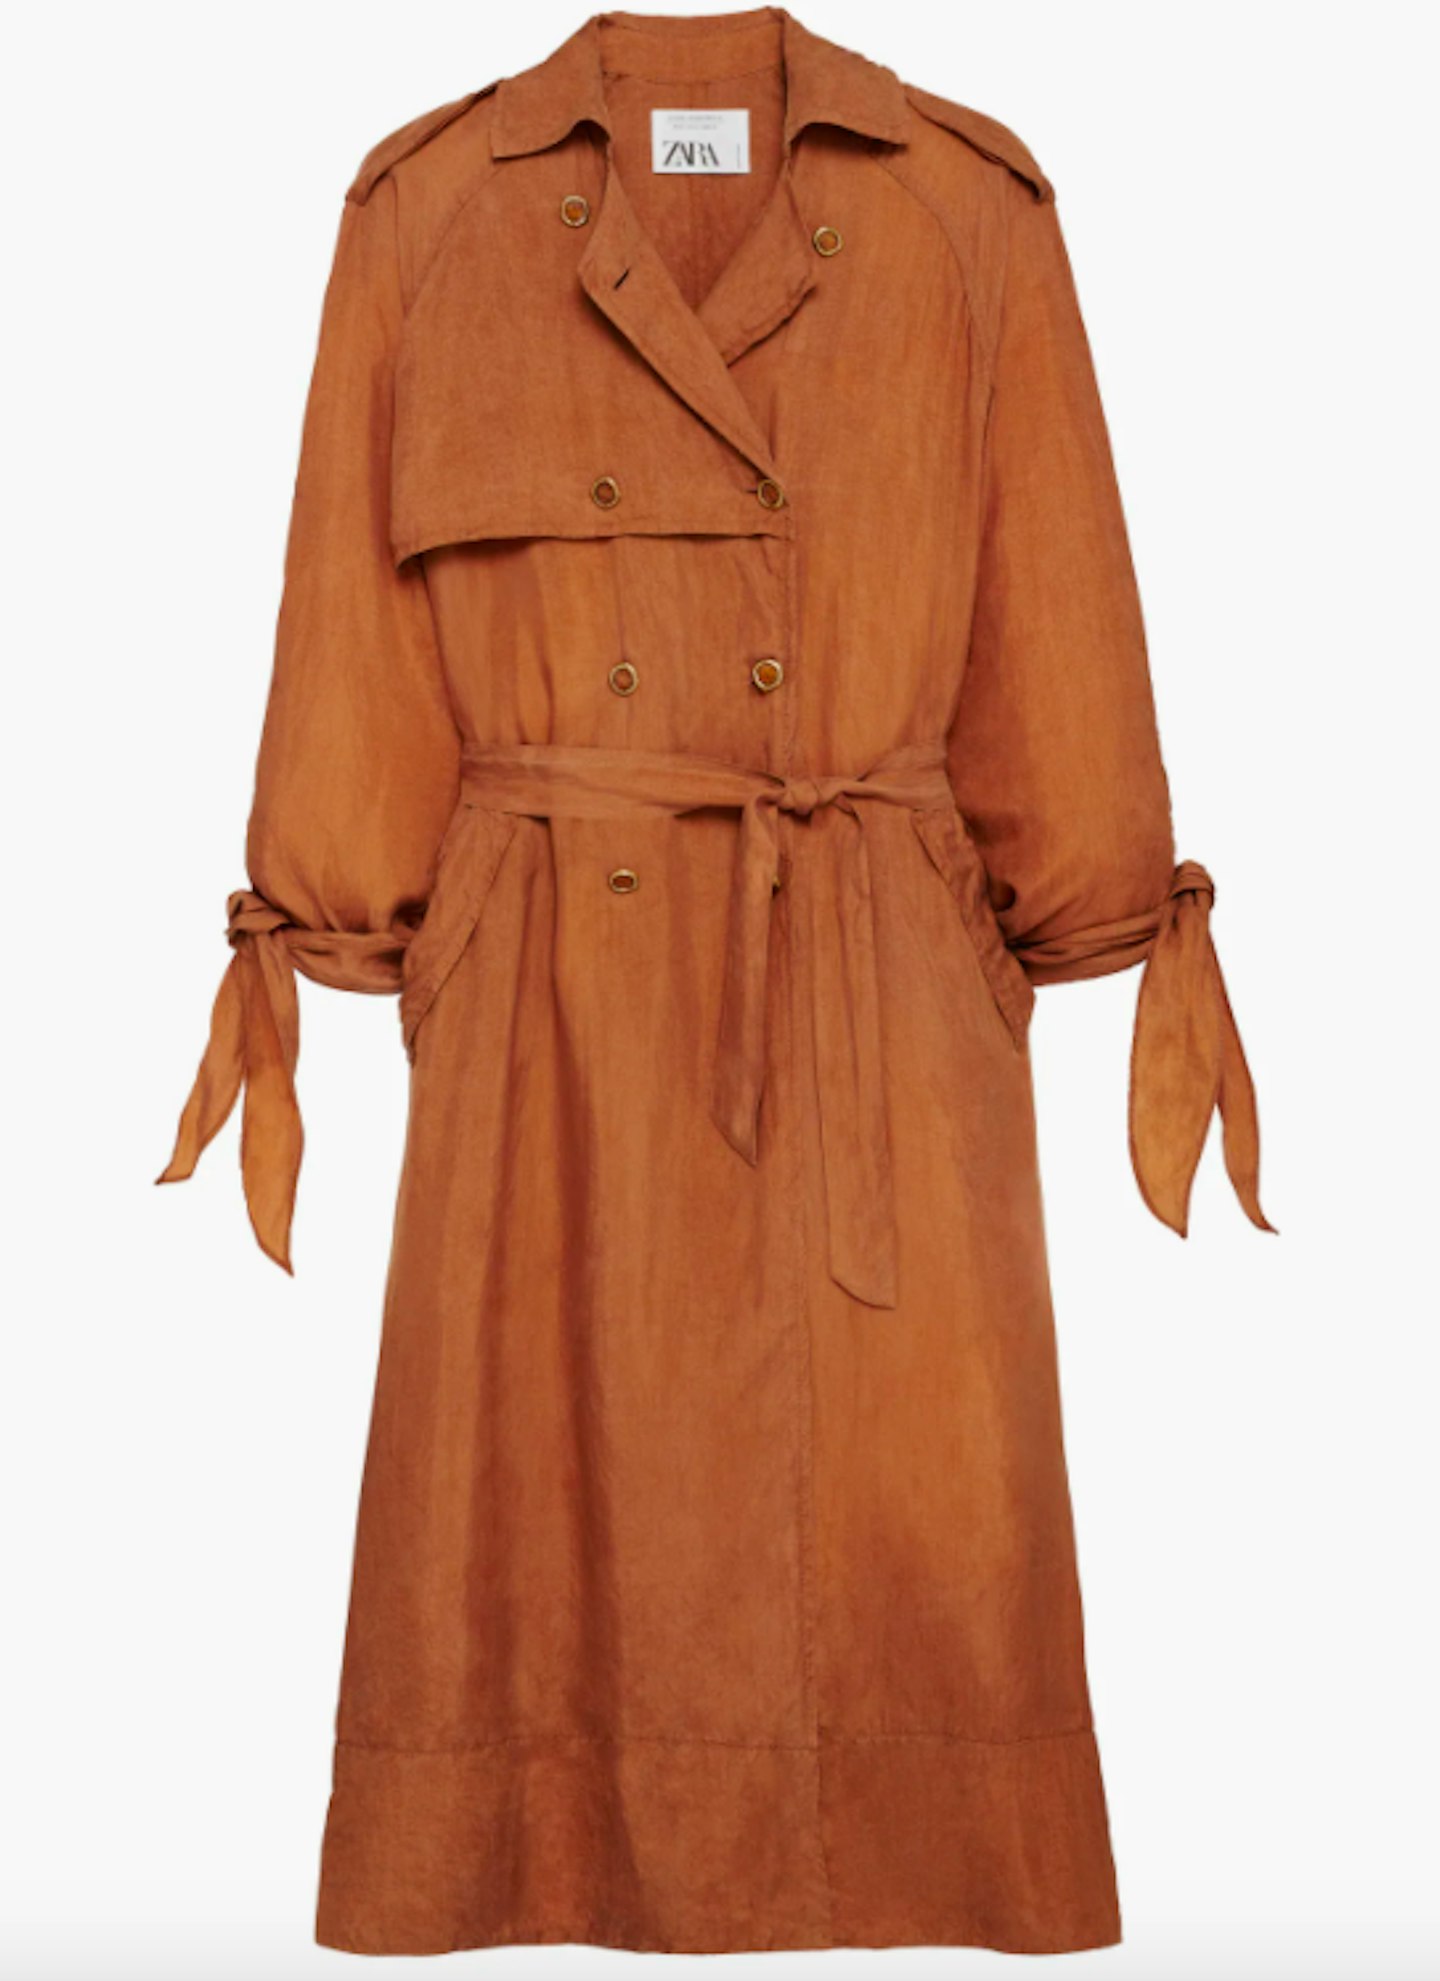 Zara, Flowing Trench Coat, £119